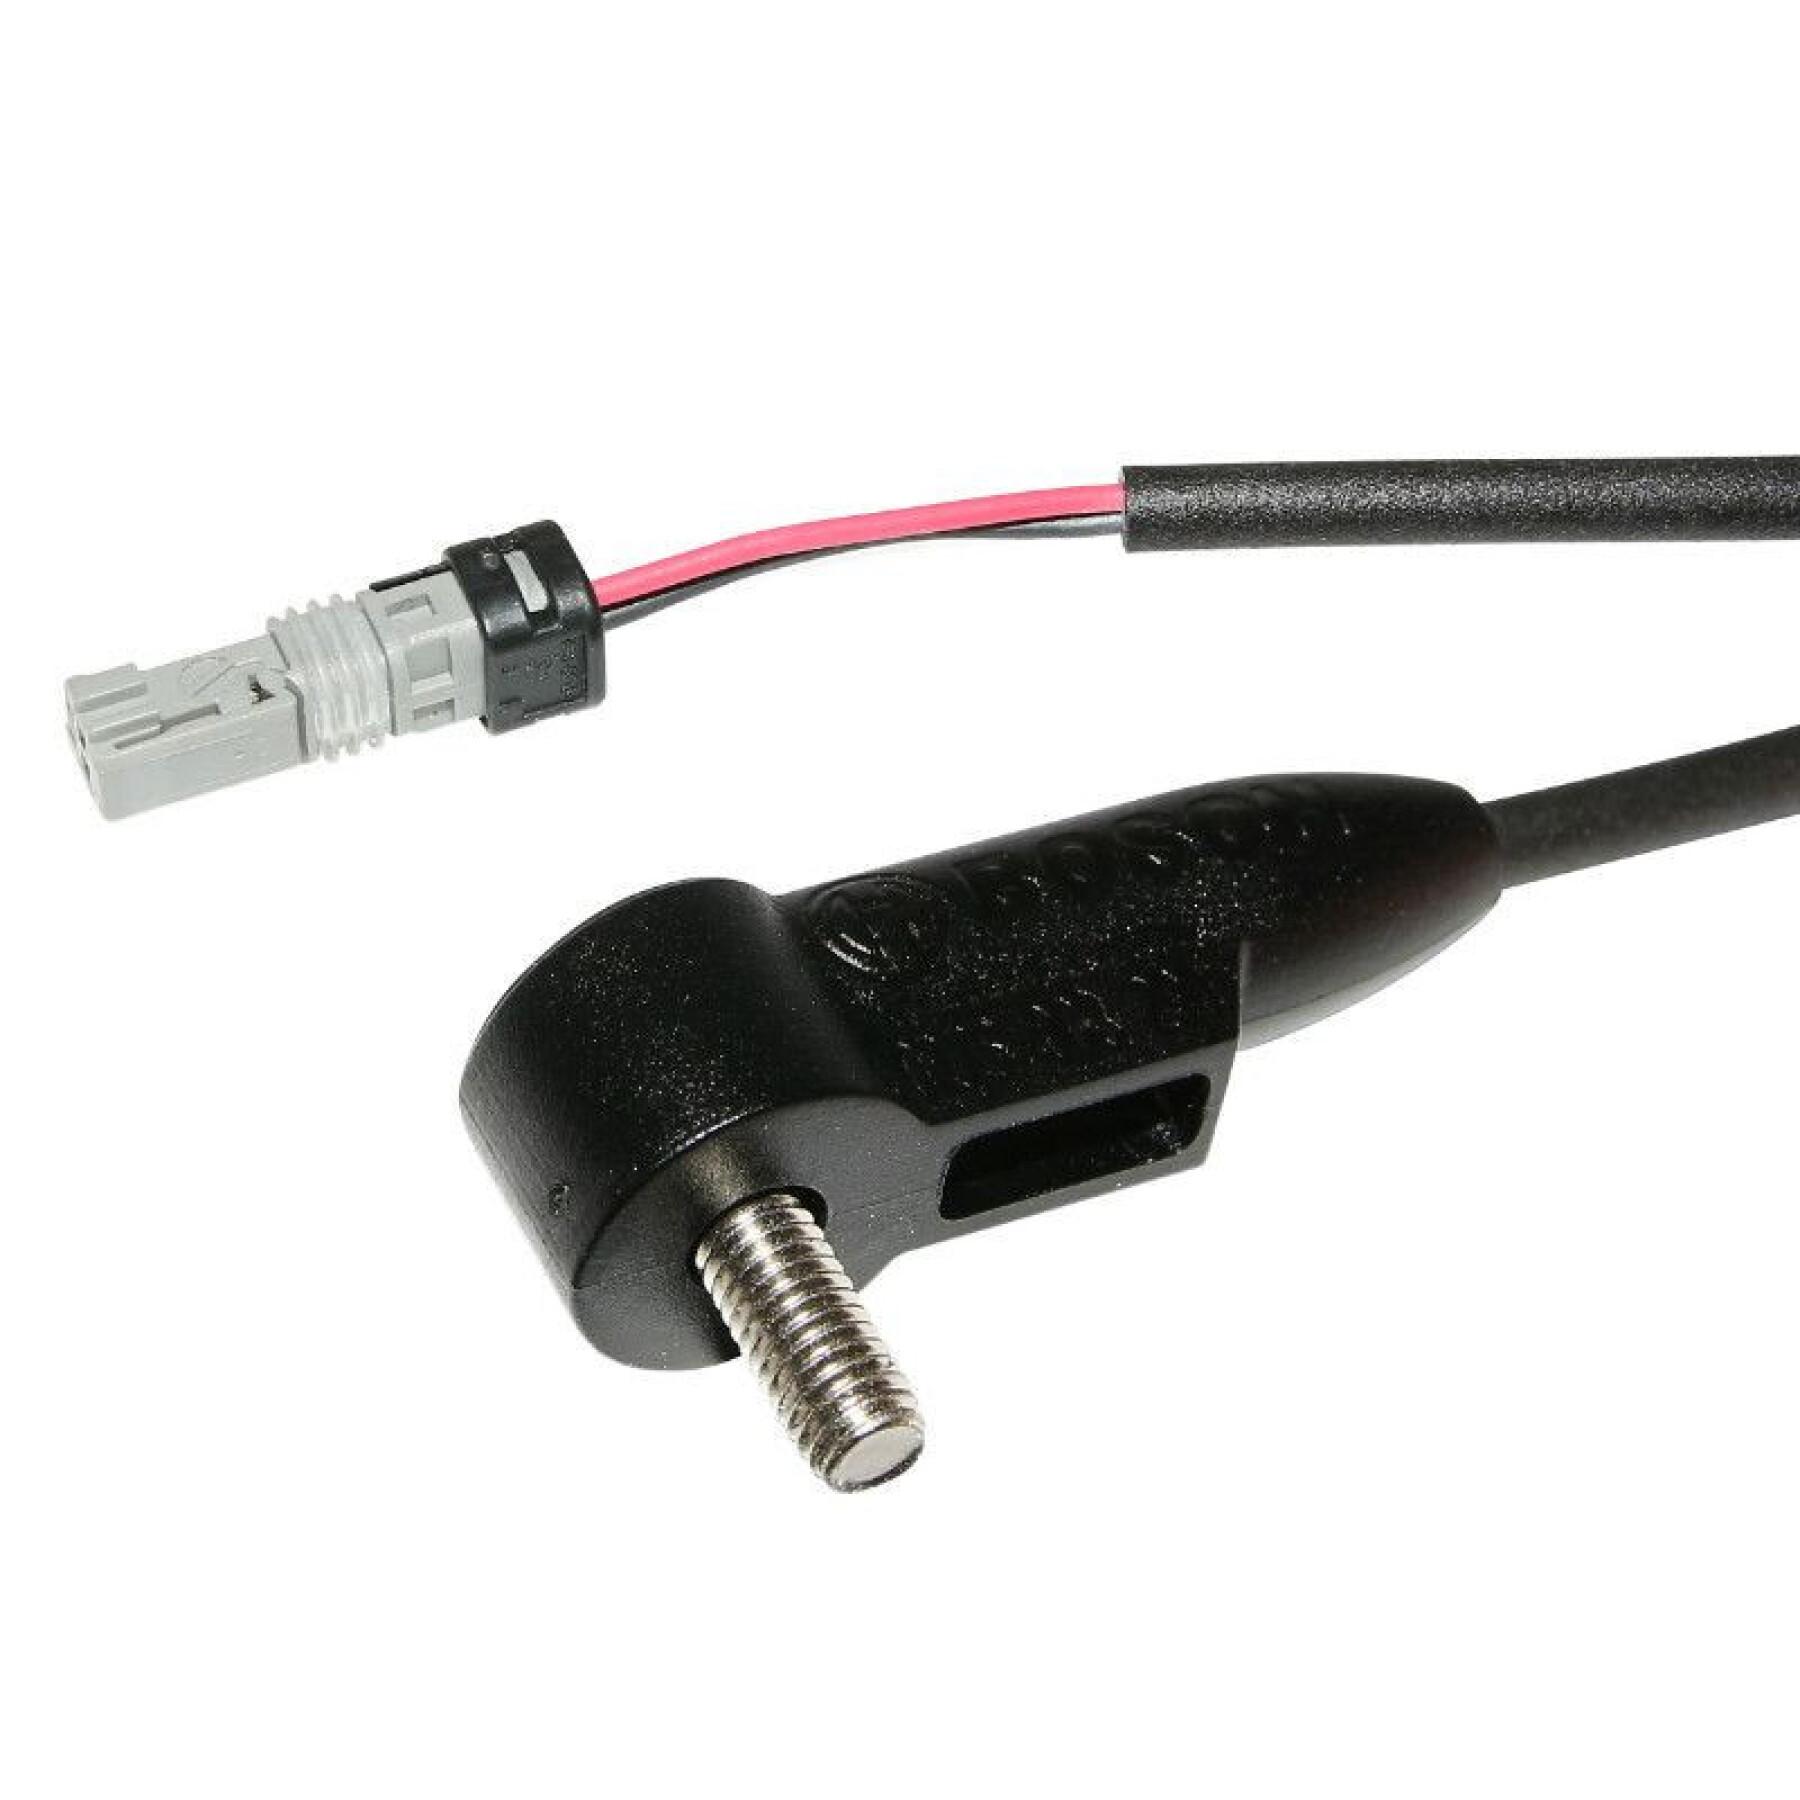 Cable de velocidad compatible con todos los modelos de unidades de accionamiento Bosch 615 mm